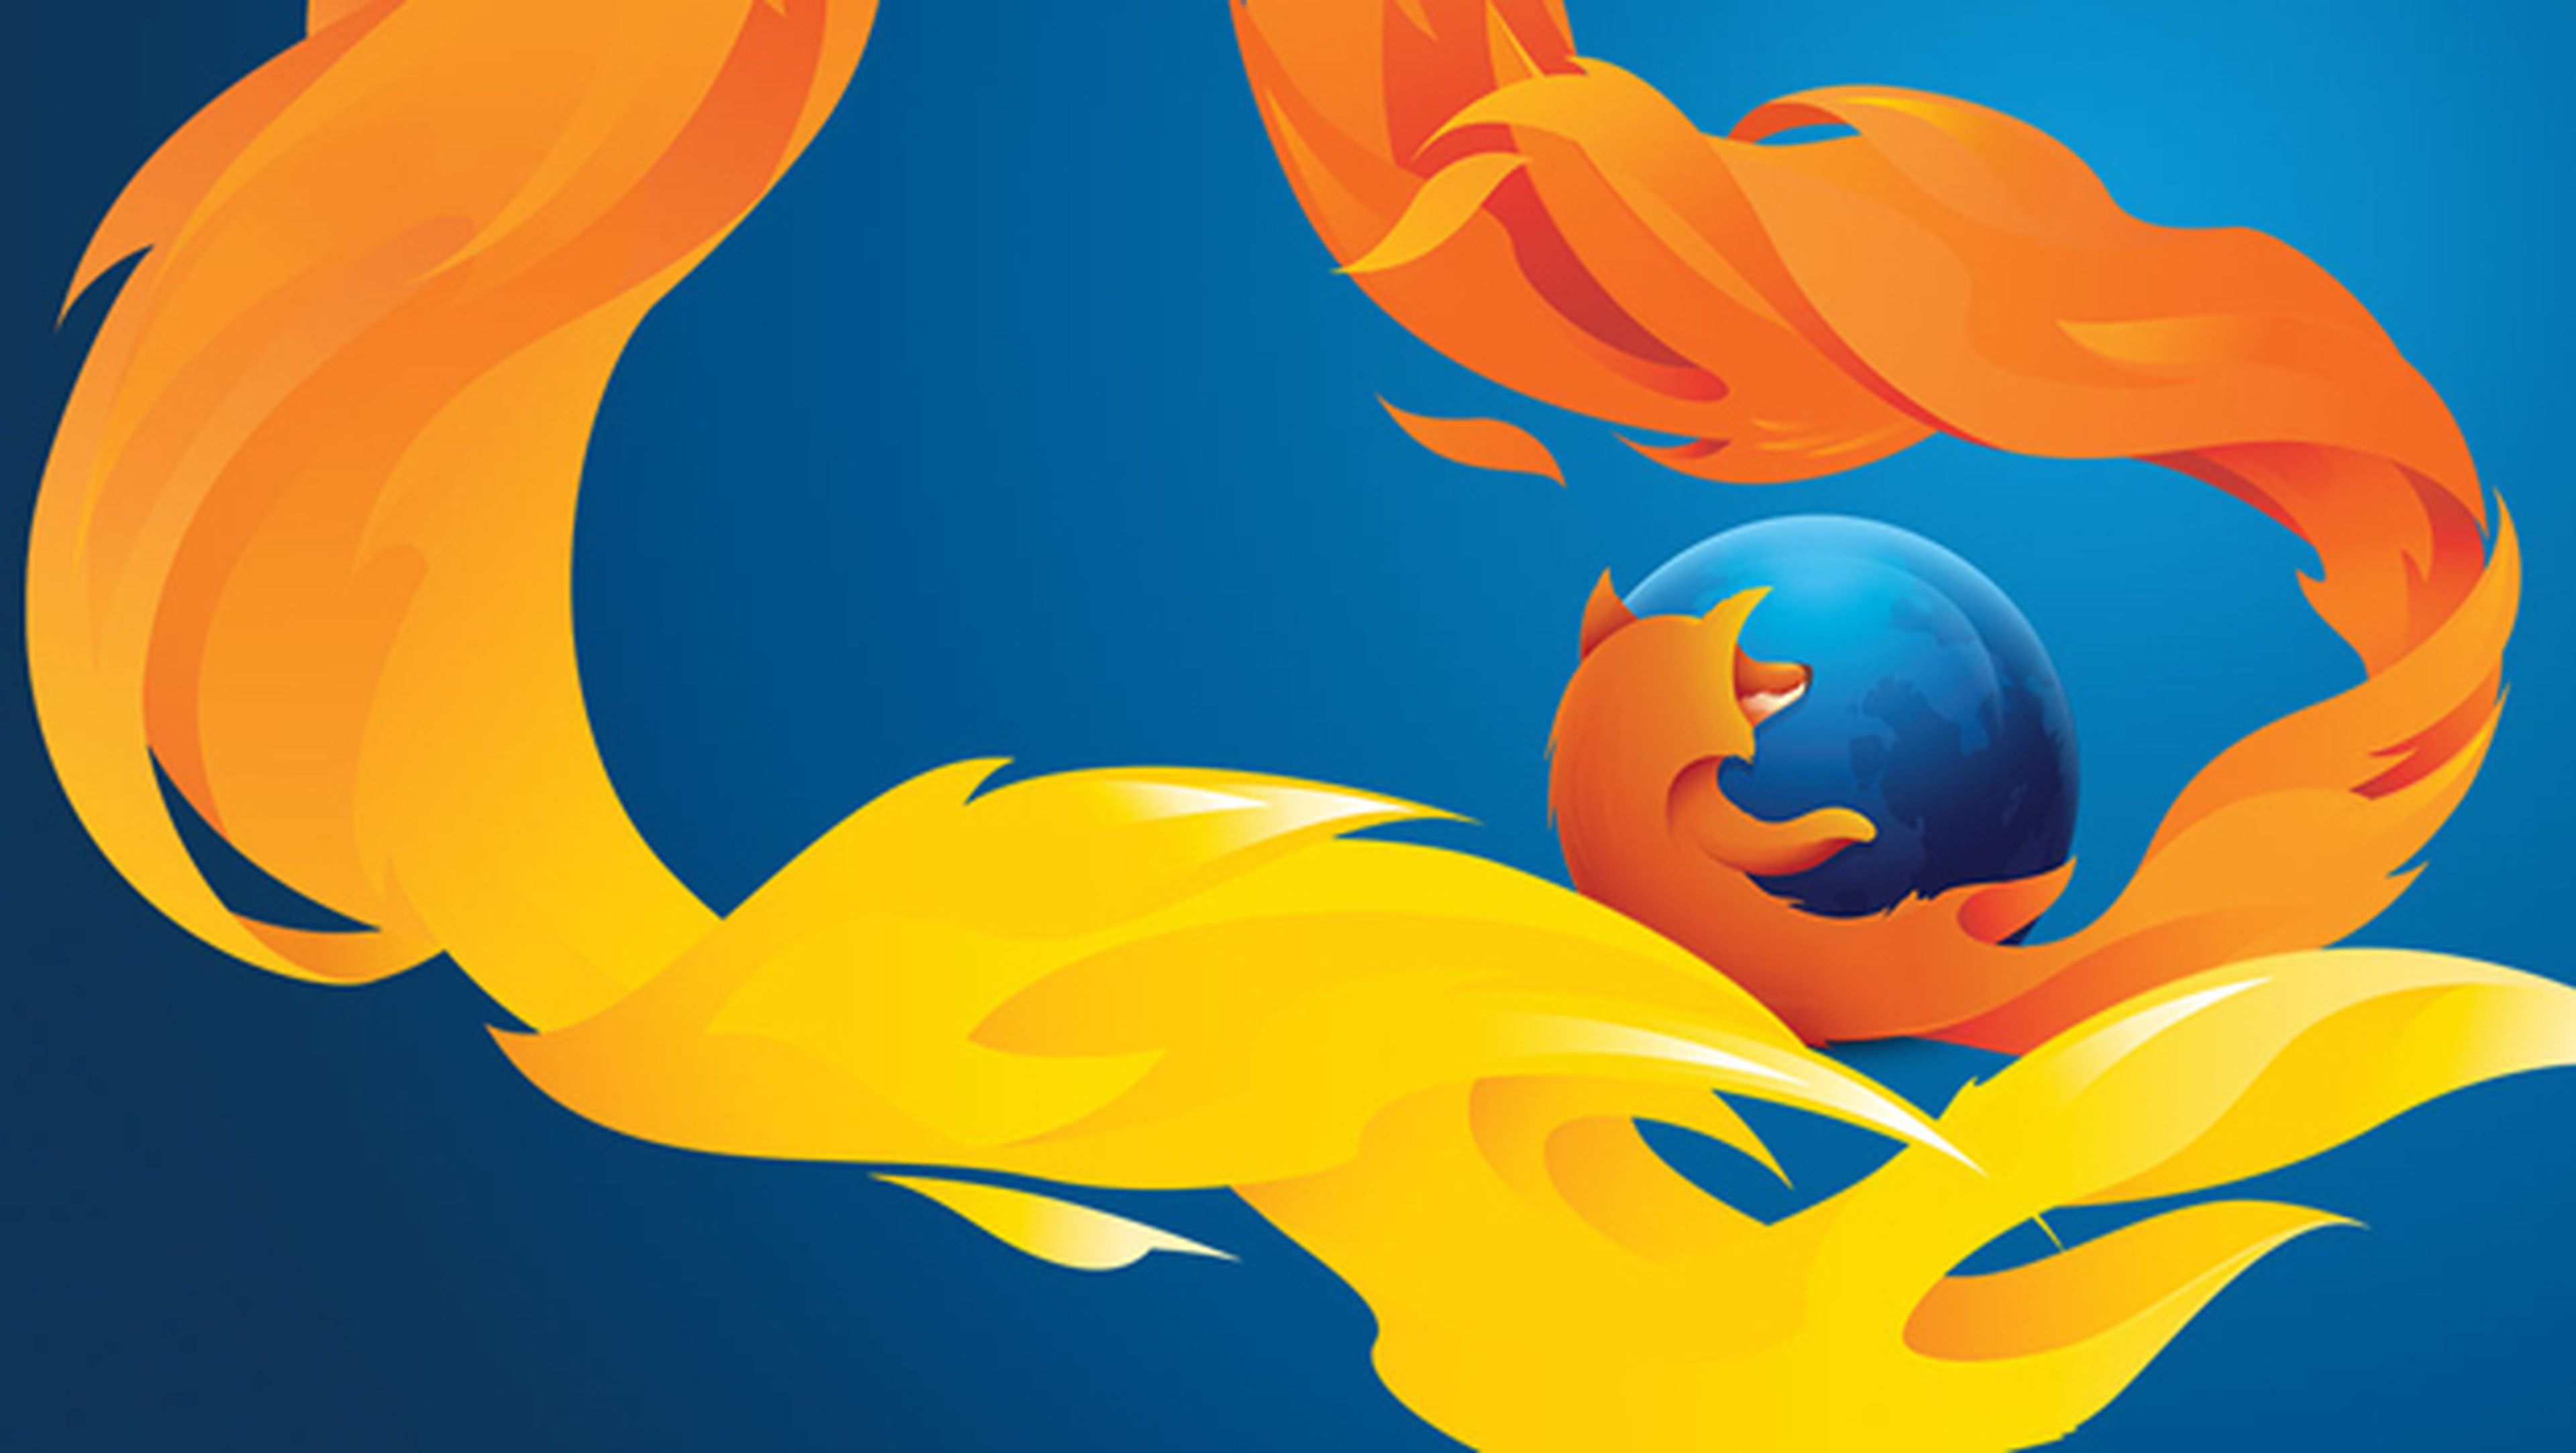 Mozilla pondrá fin al soporte de Firefox en Windows XP y Vista